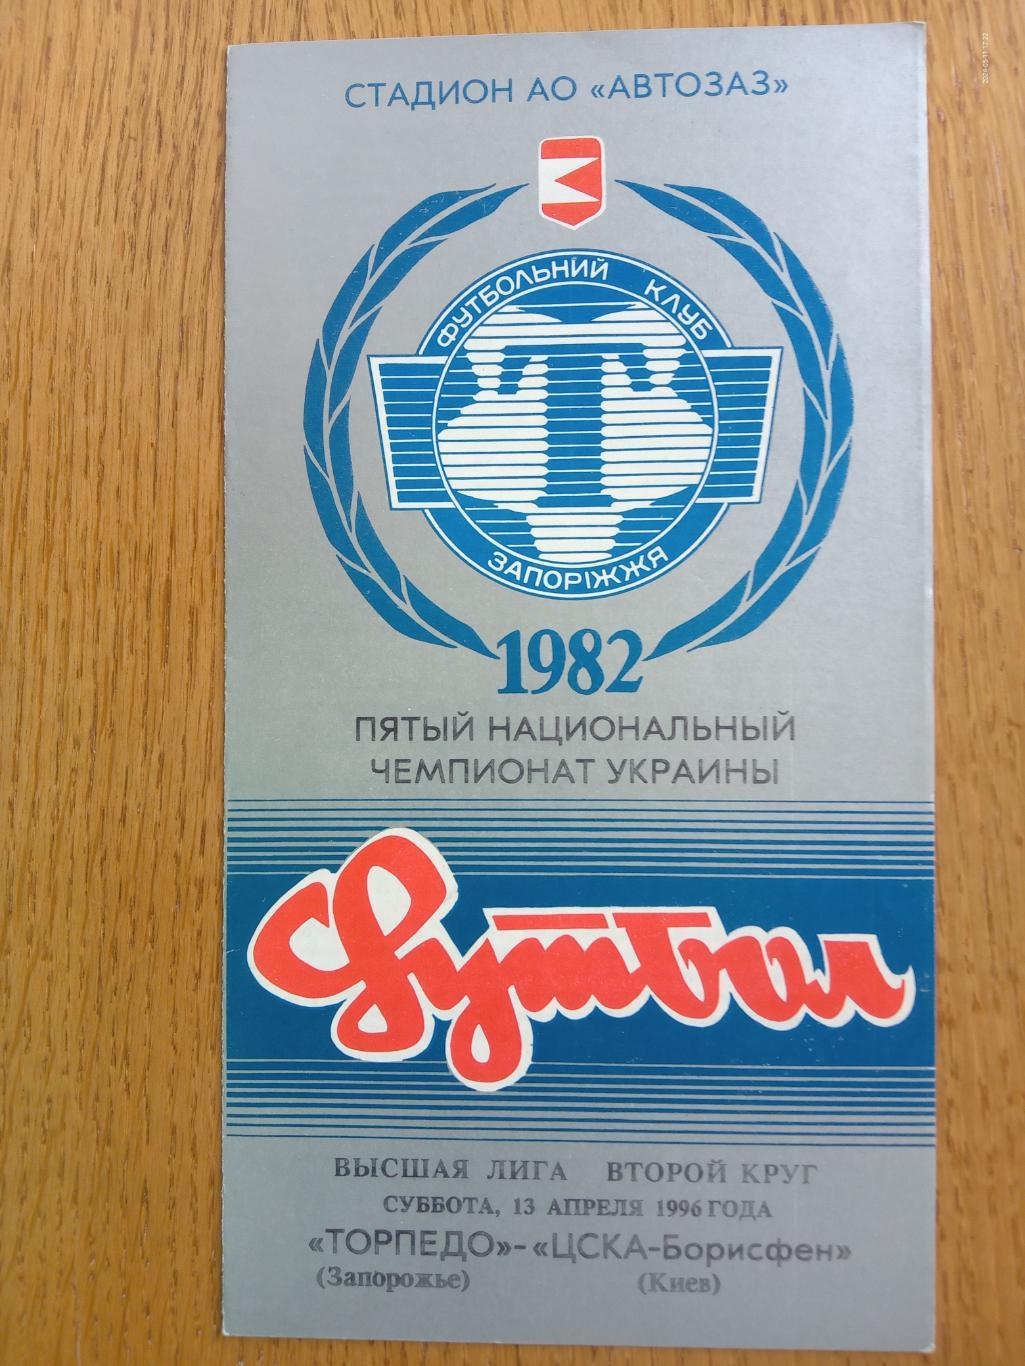 Торпедо Запоріжжя - ЦСКА Борисфен. 13.04.1996.#.м.